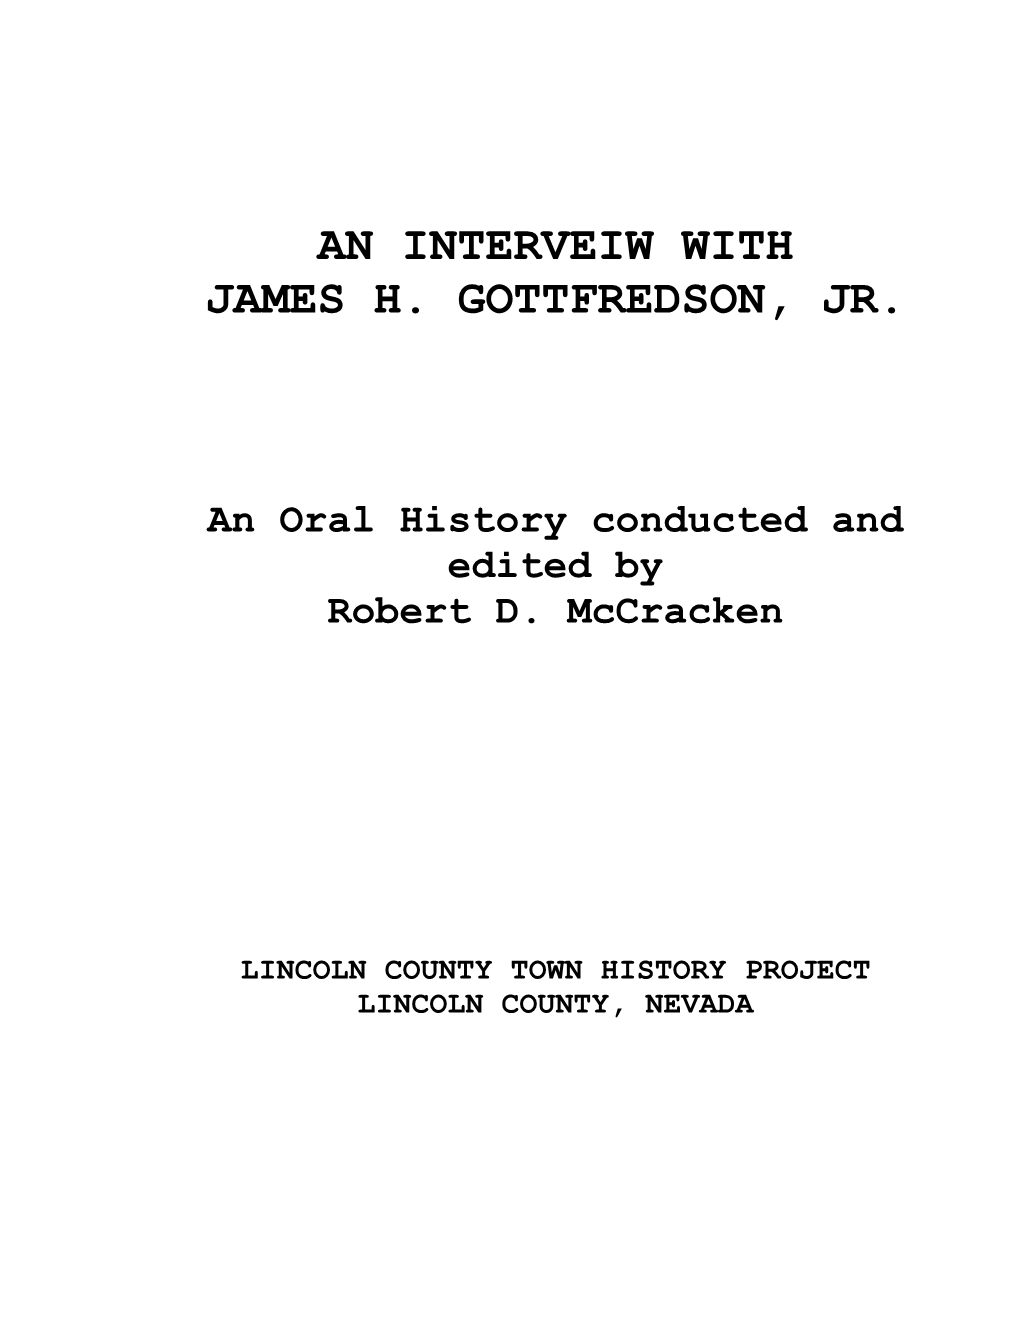 An Interveiw with James H. Gottfredson, Jr